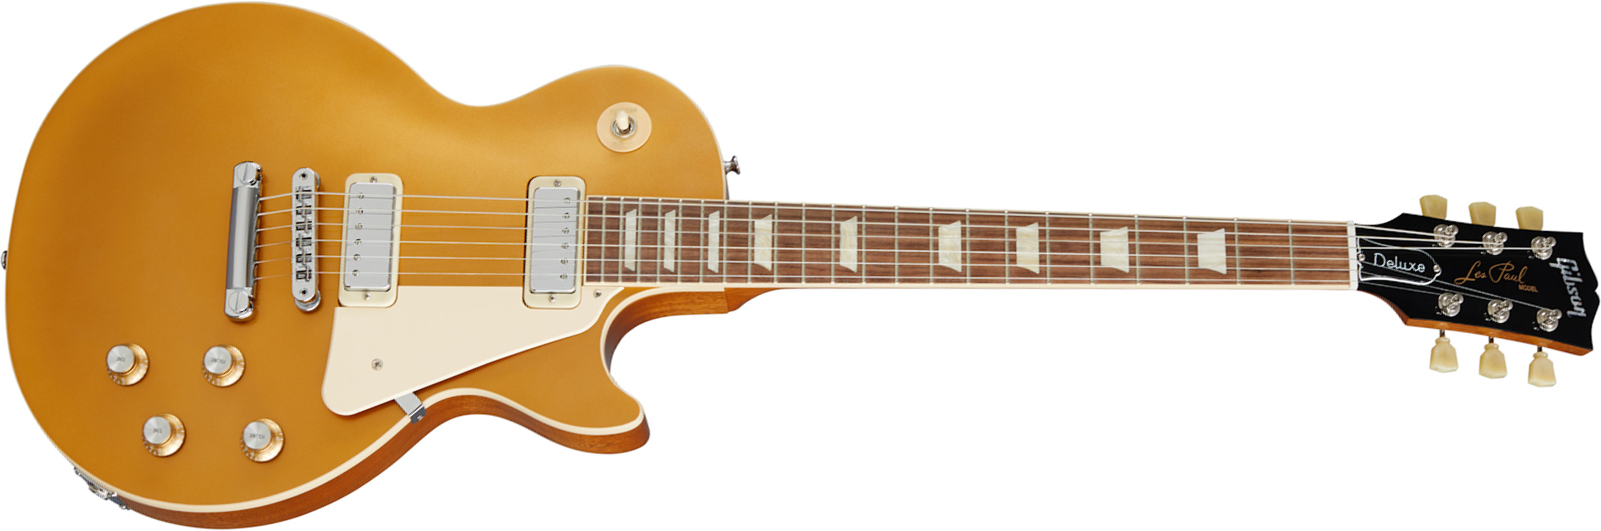 Gibson Les Paul Deluxe 70s Original 2mh Ht Rw - Gold Top - Guitare Électrique Single Cut - Main picture